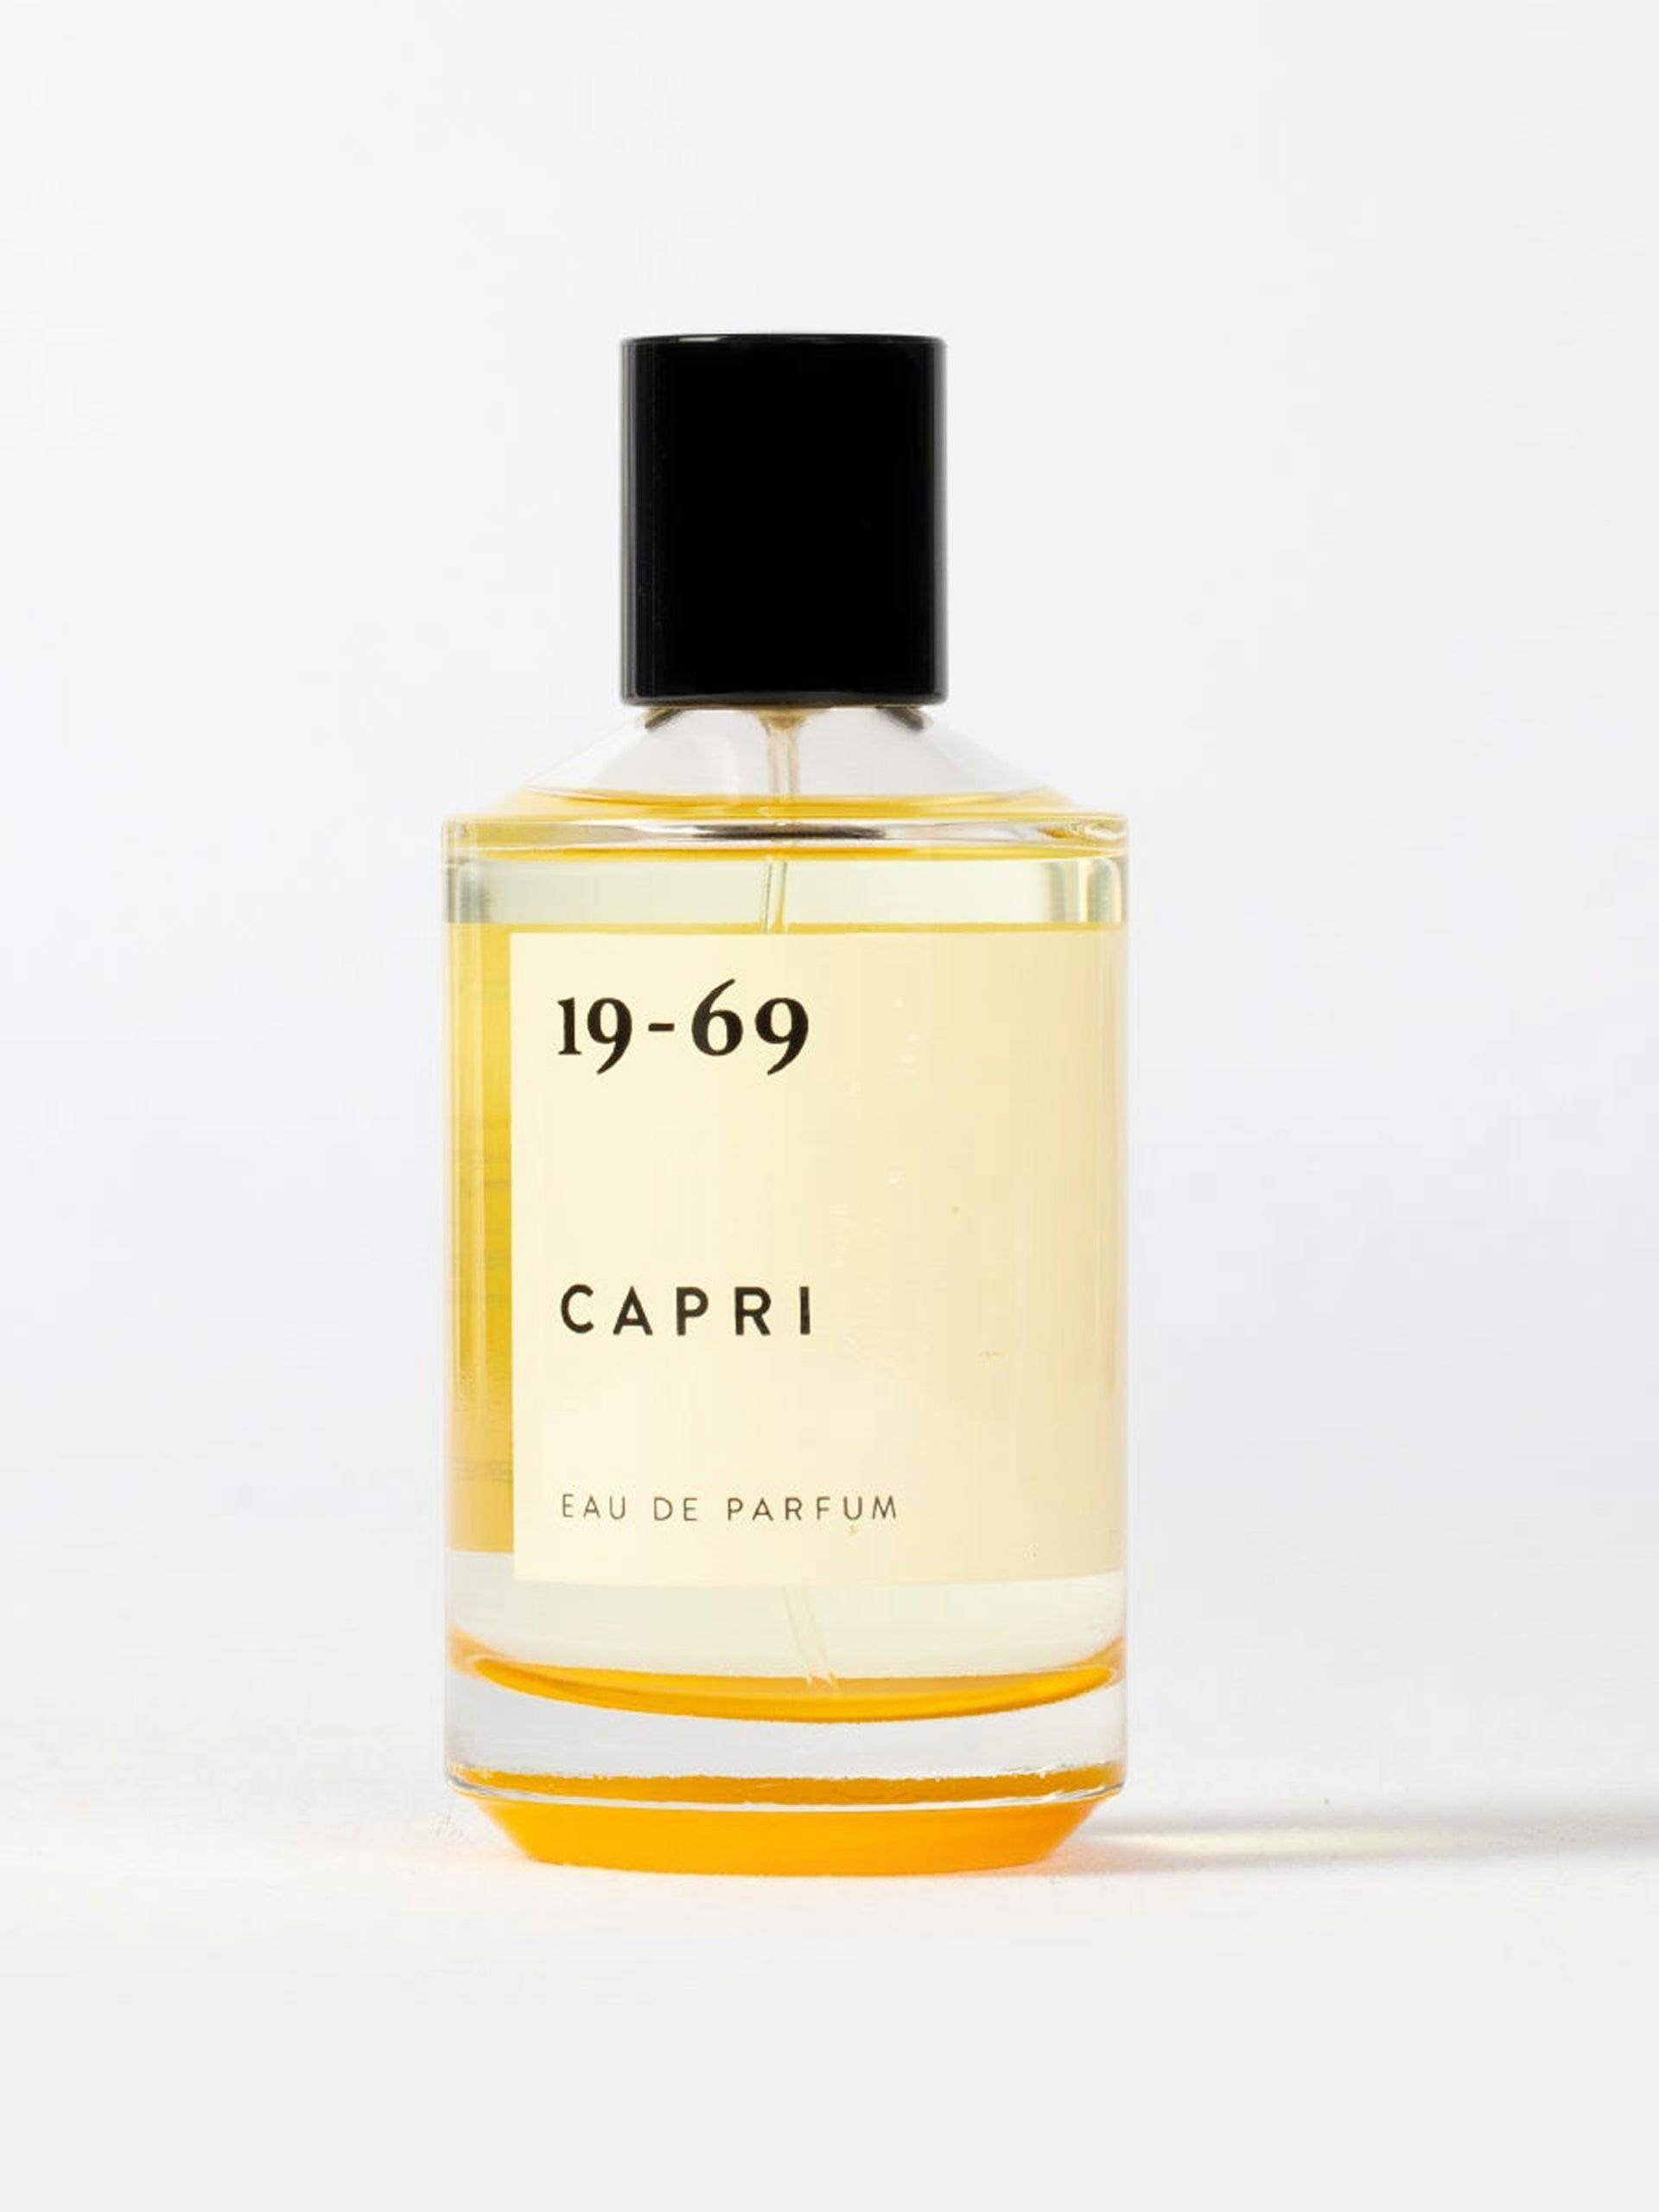 Capri eau de parfum